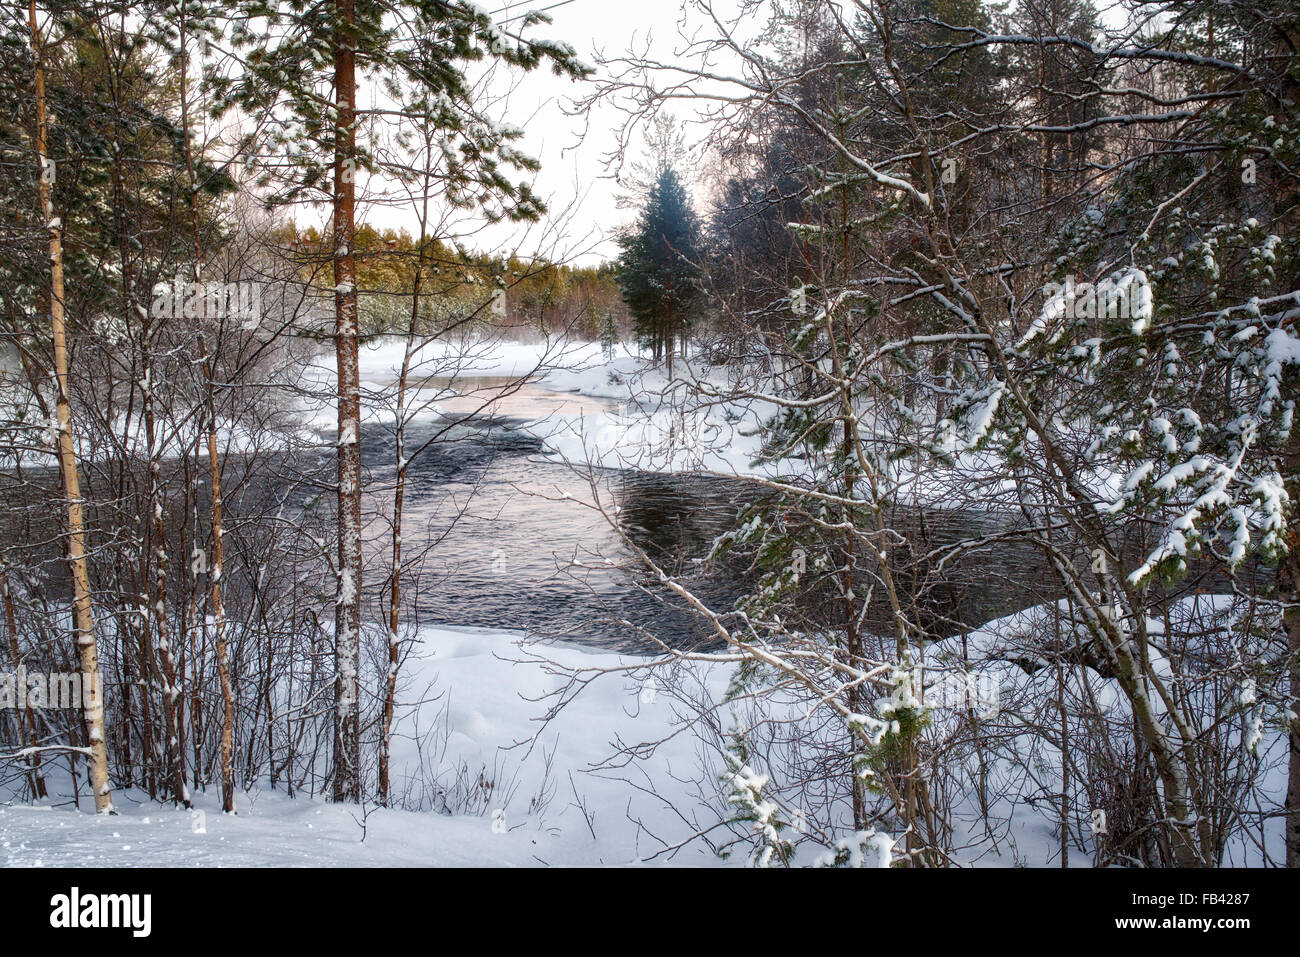 La rivière qui coule dans le paysage gelé, Finlande Banque D'Images